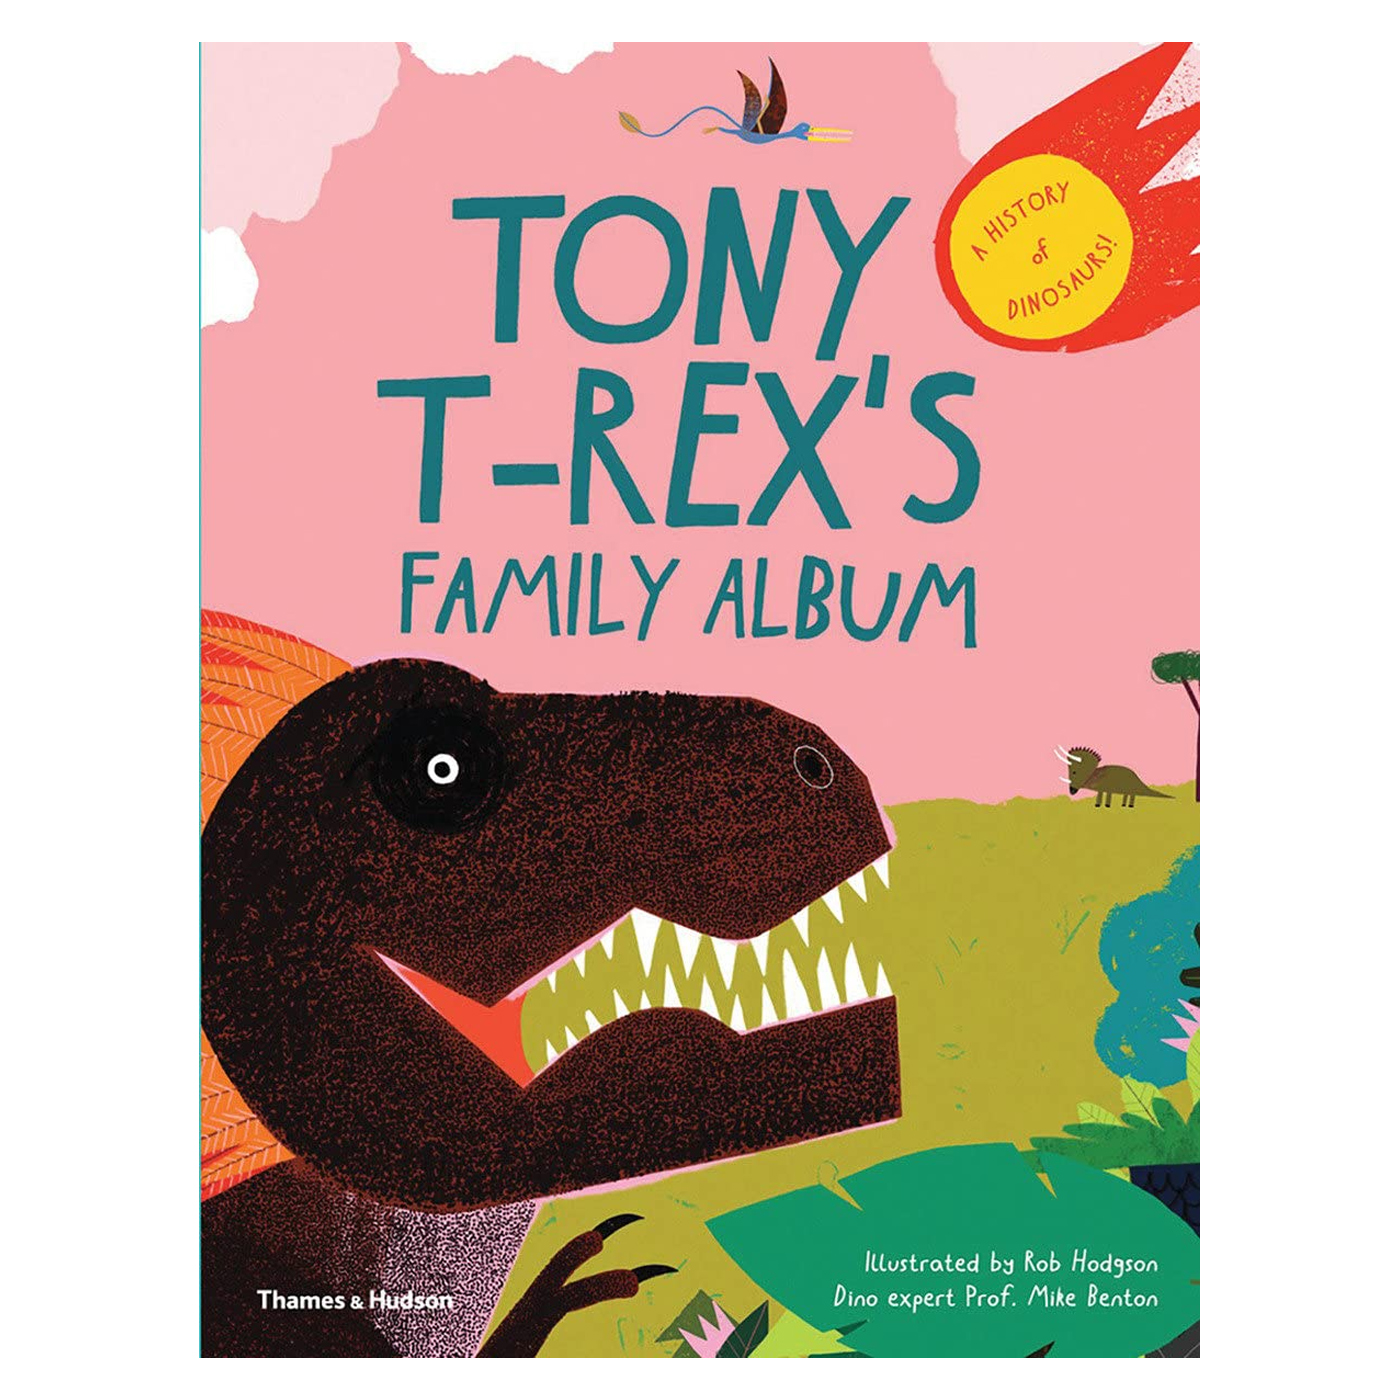  Tony T-Rex's Family Album: A History of Dinosaurs!